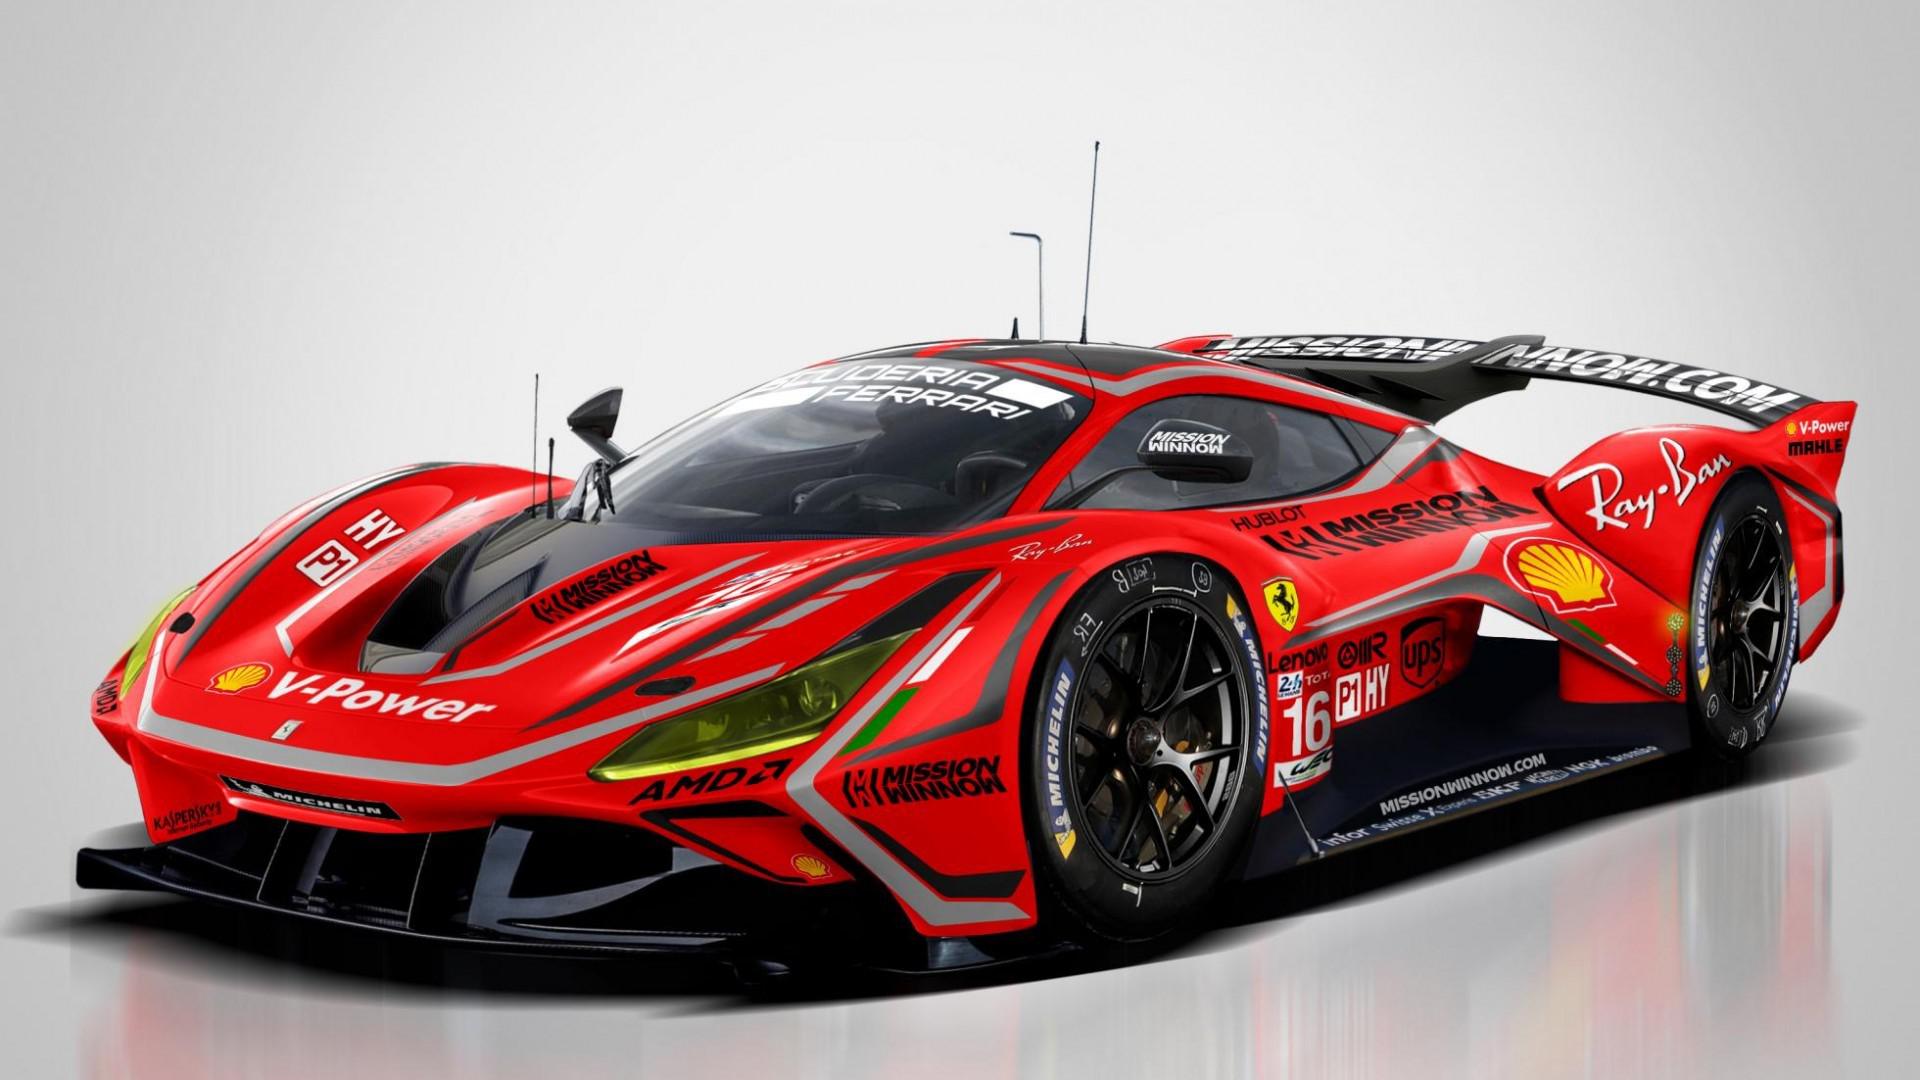 Verra-t-on une Ferrari en catégorie Le Mans Hypercar en 2021 ?